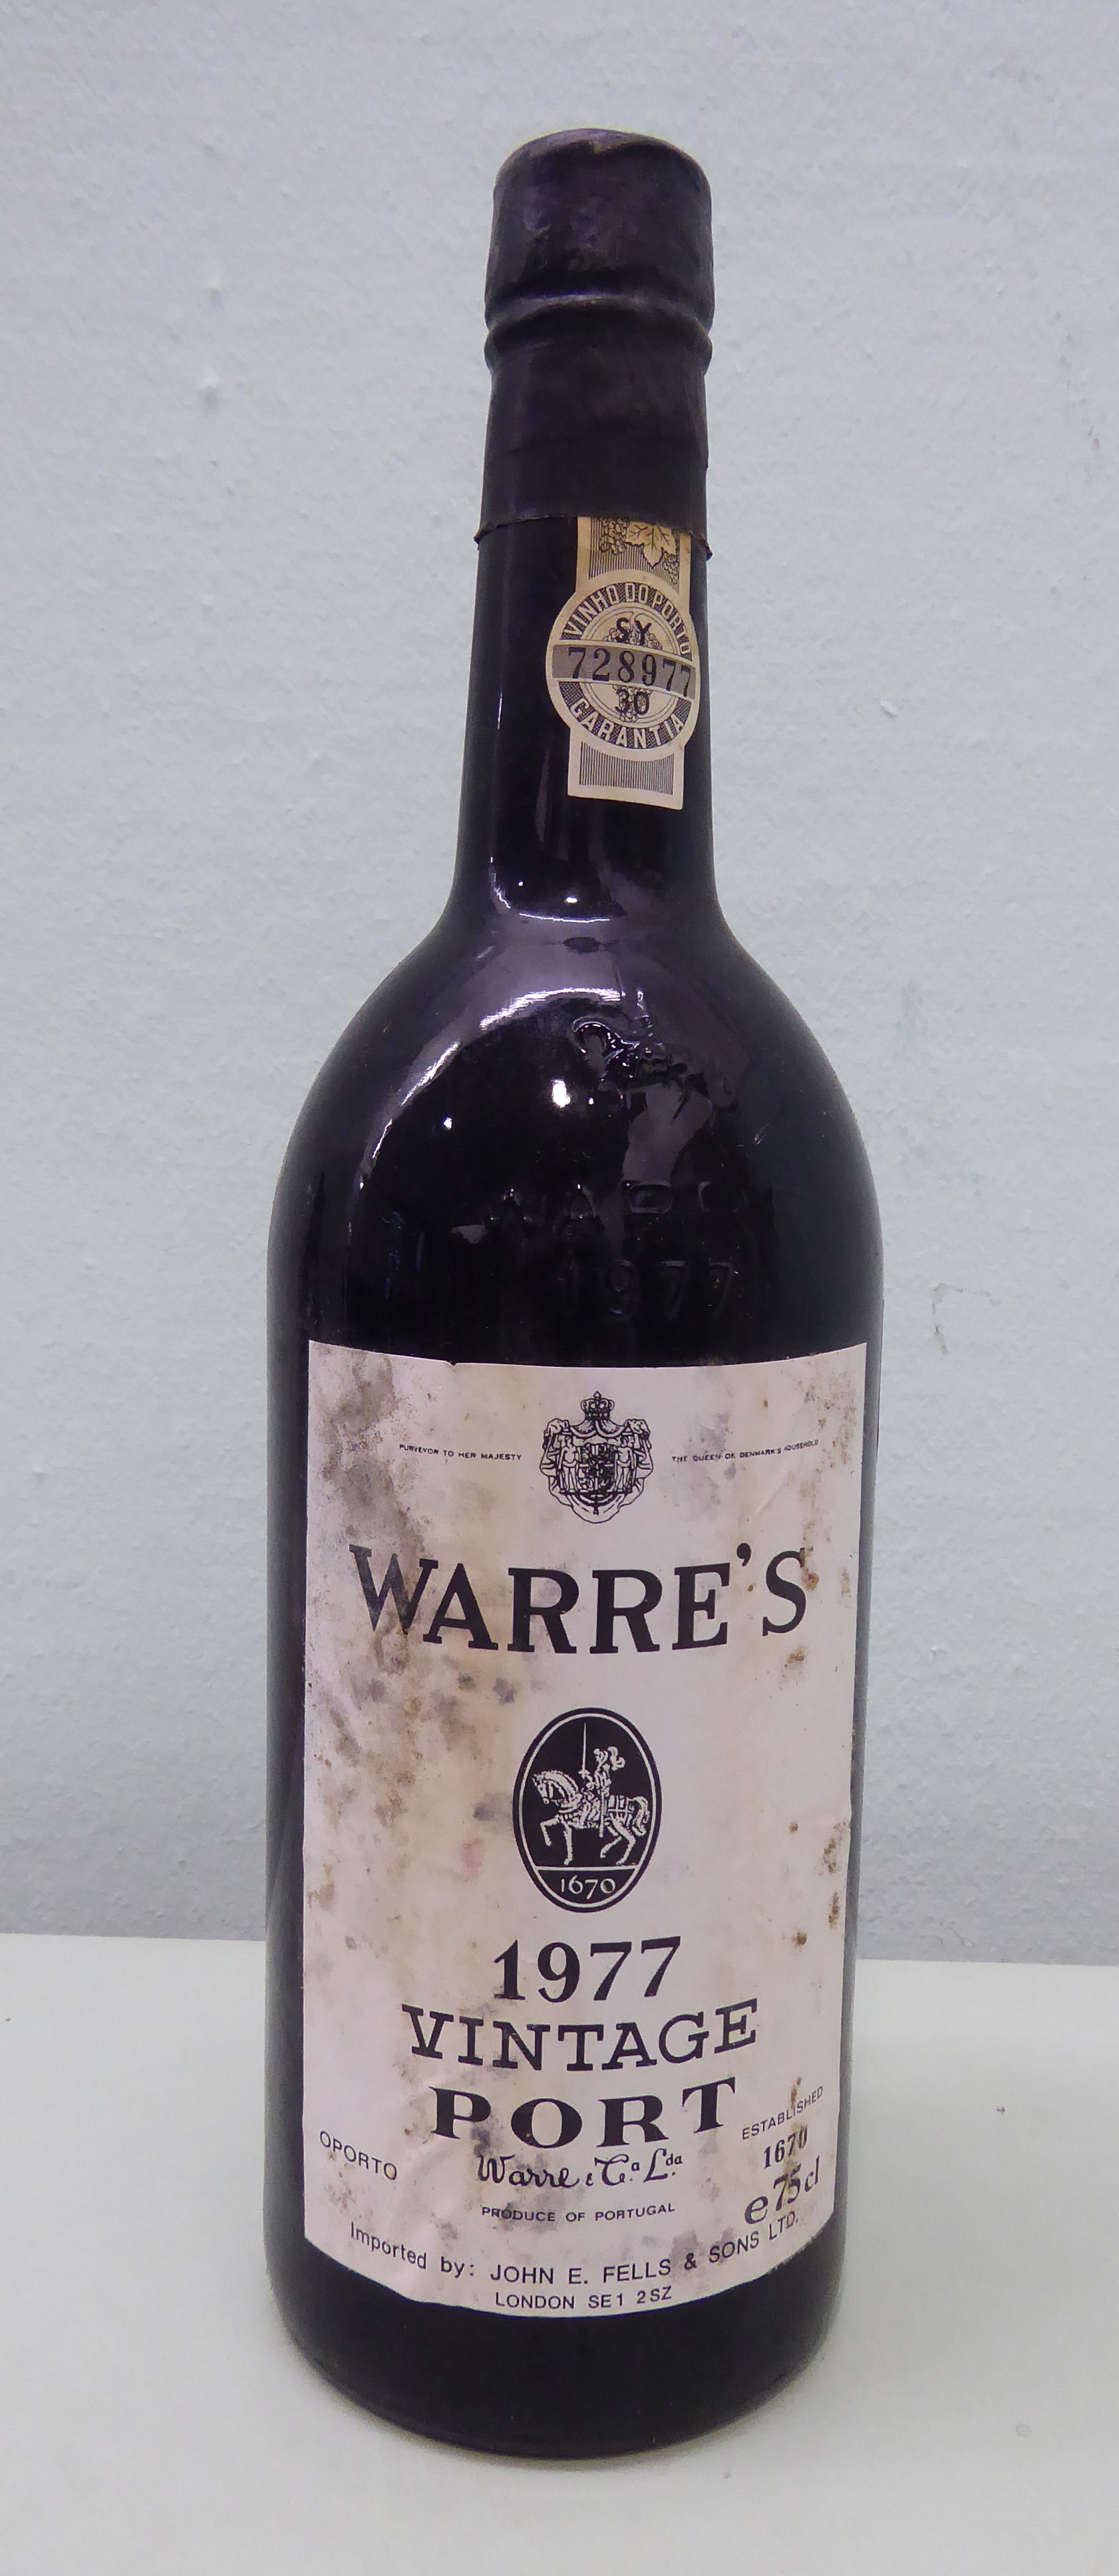 A bottle of Warre's 1977 Vintage Port